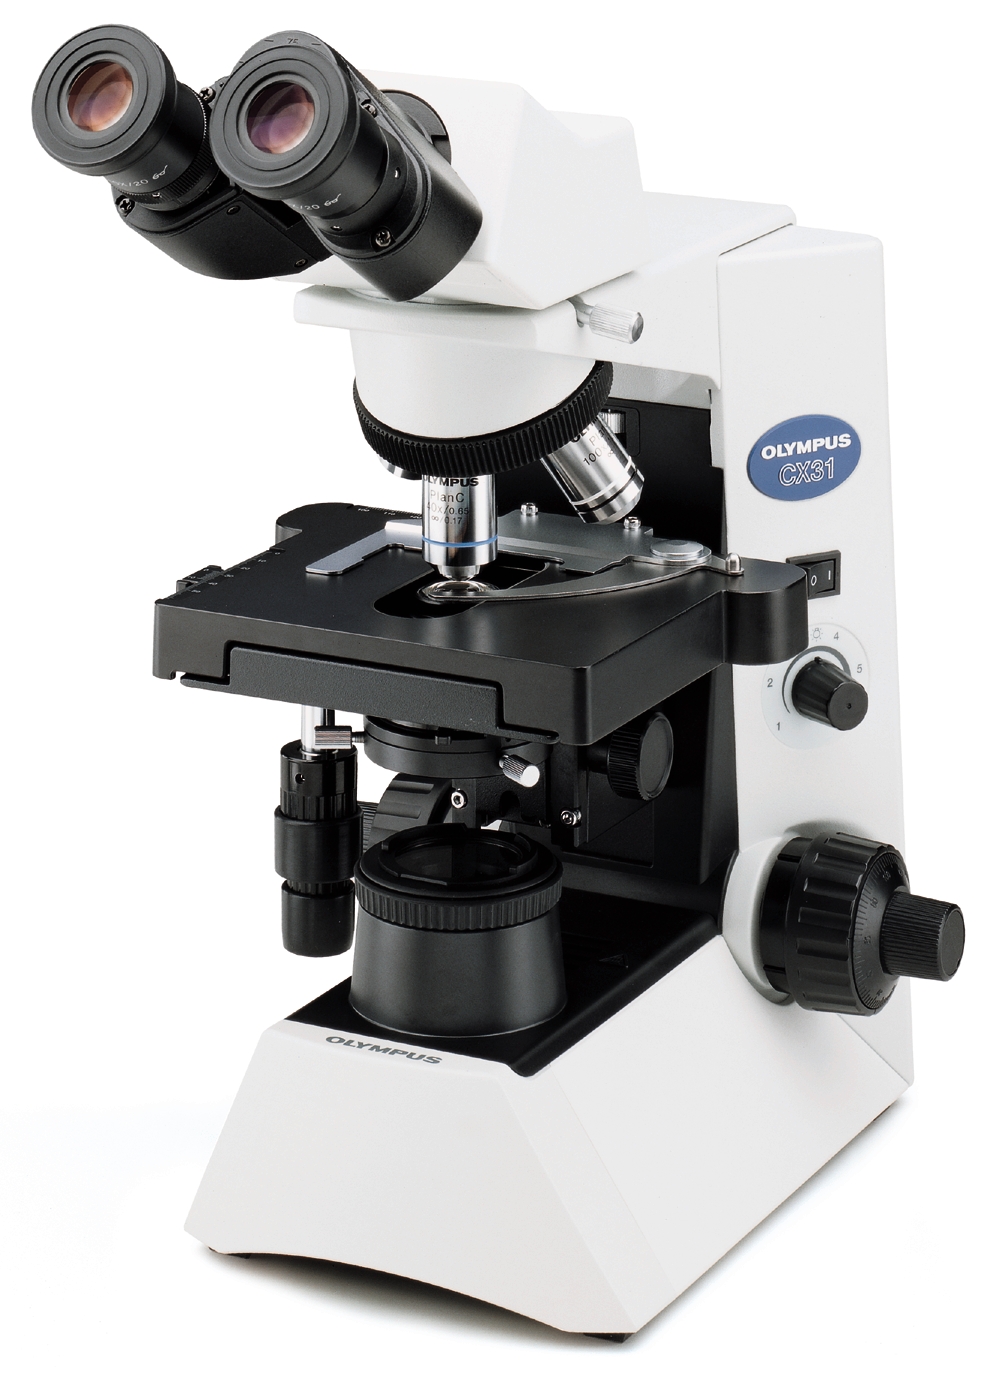 CX41-12C02奥林巴斯生物双目显微镜 CX41-12C02